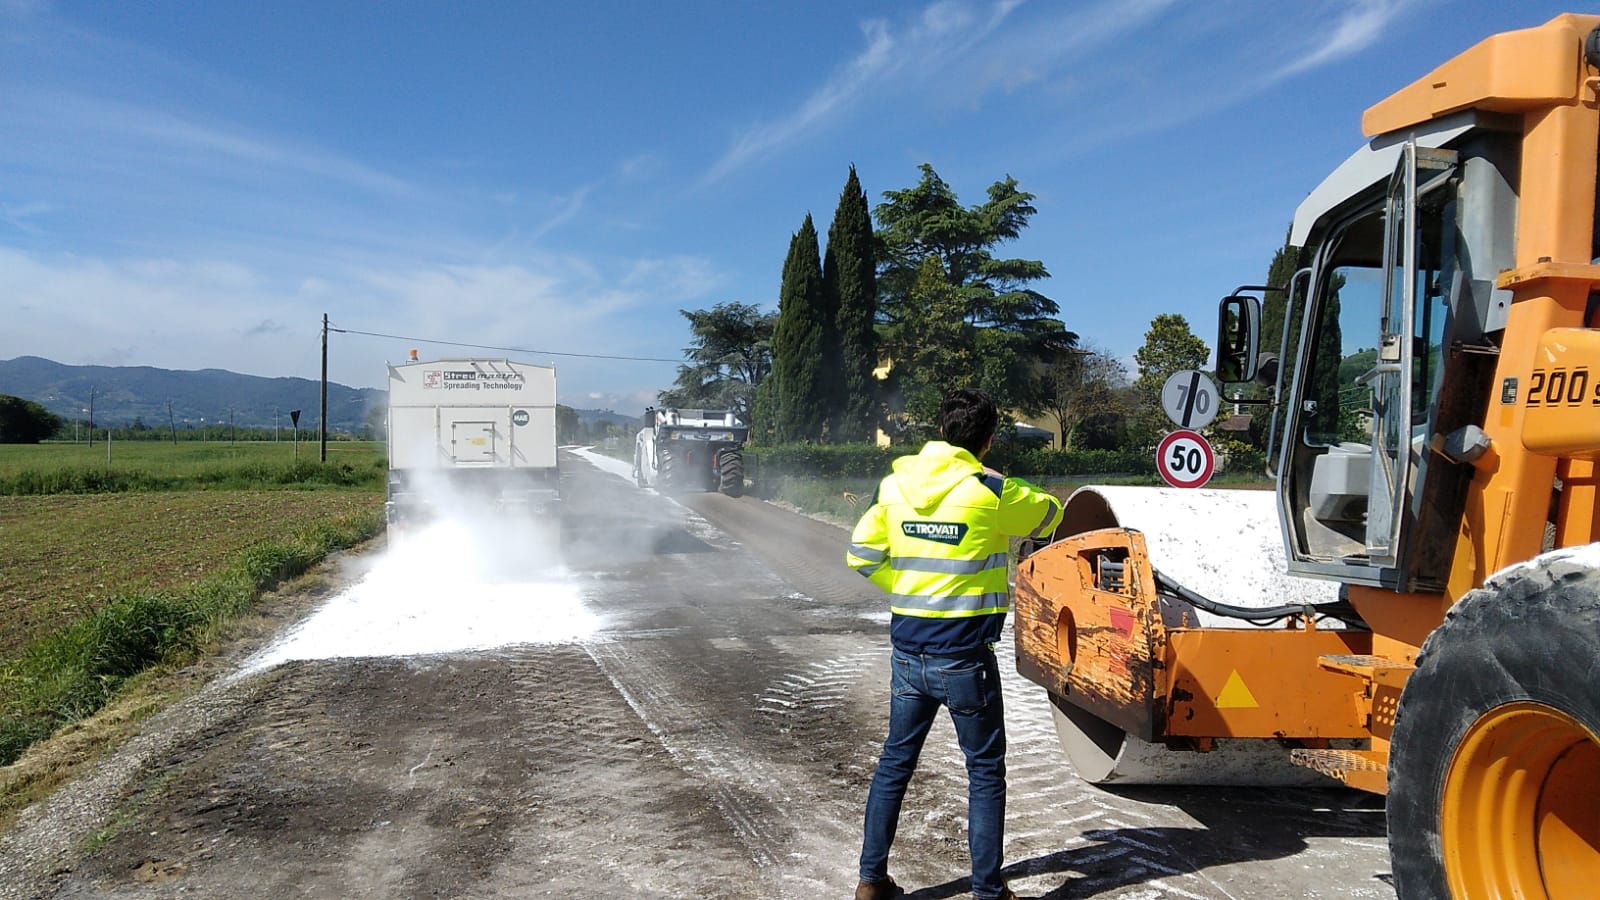 Viabilità – SP 400, terminati i lavori di stabilizzazione e rifatto il piano viabile sulla direttrice Bastia Umbra-Torgiano